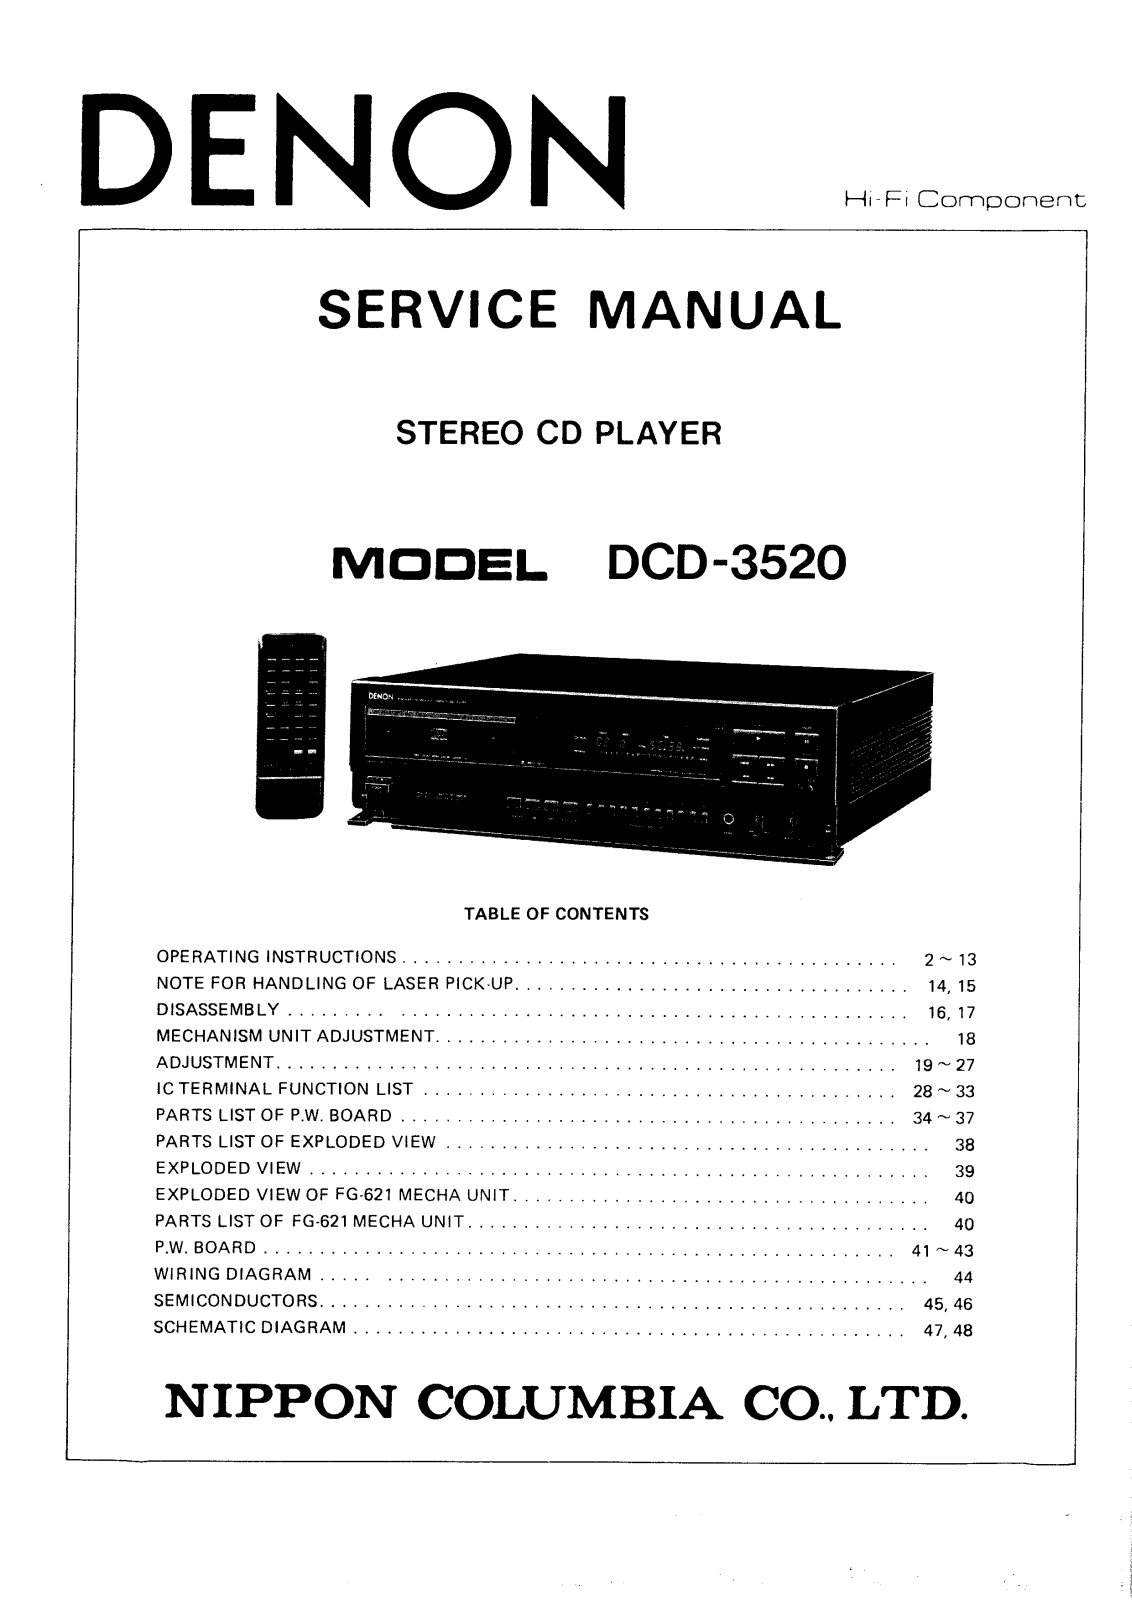 Denon DCD-3520 Service Manual